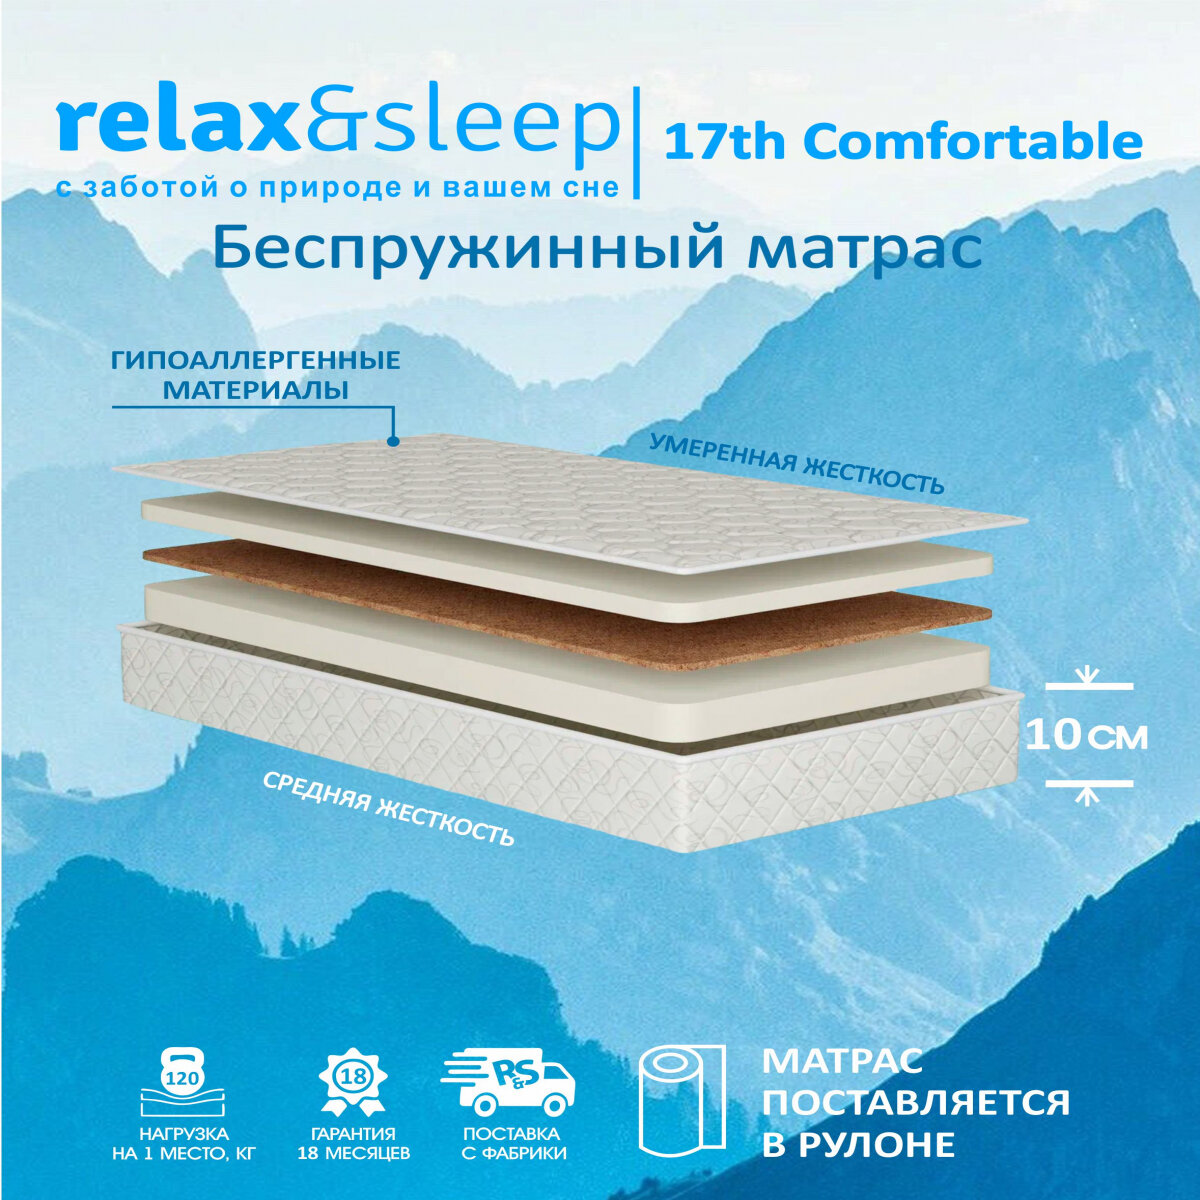 Матрас Relax&Sleep ортопедический беспружинный, топпер 17h Comfortable (185 / 200)